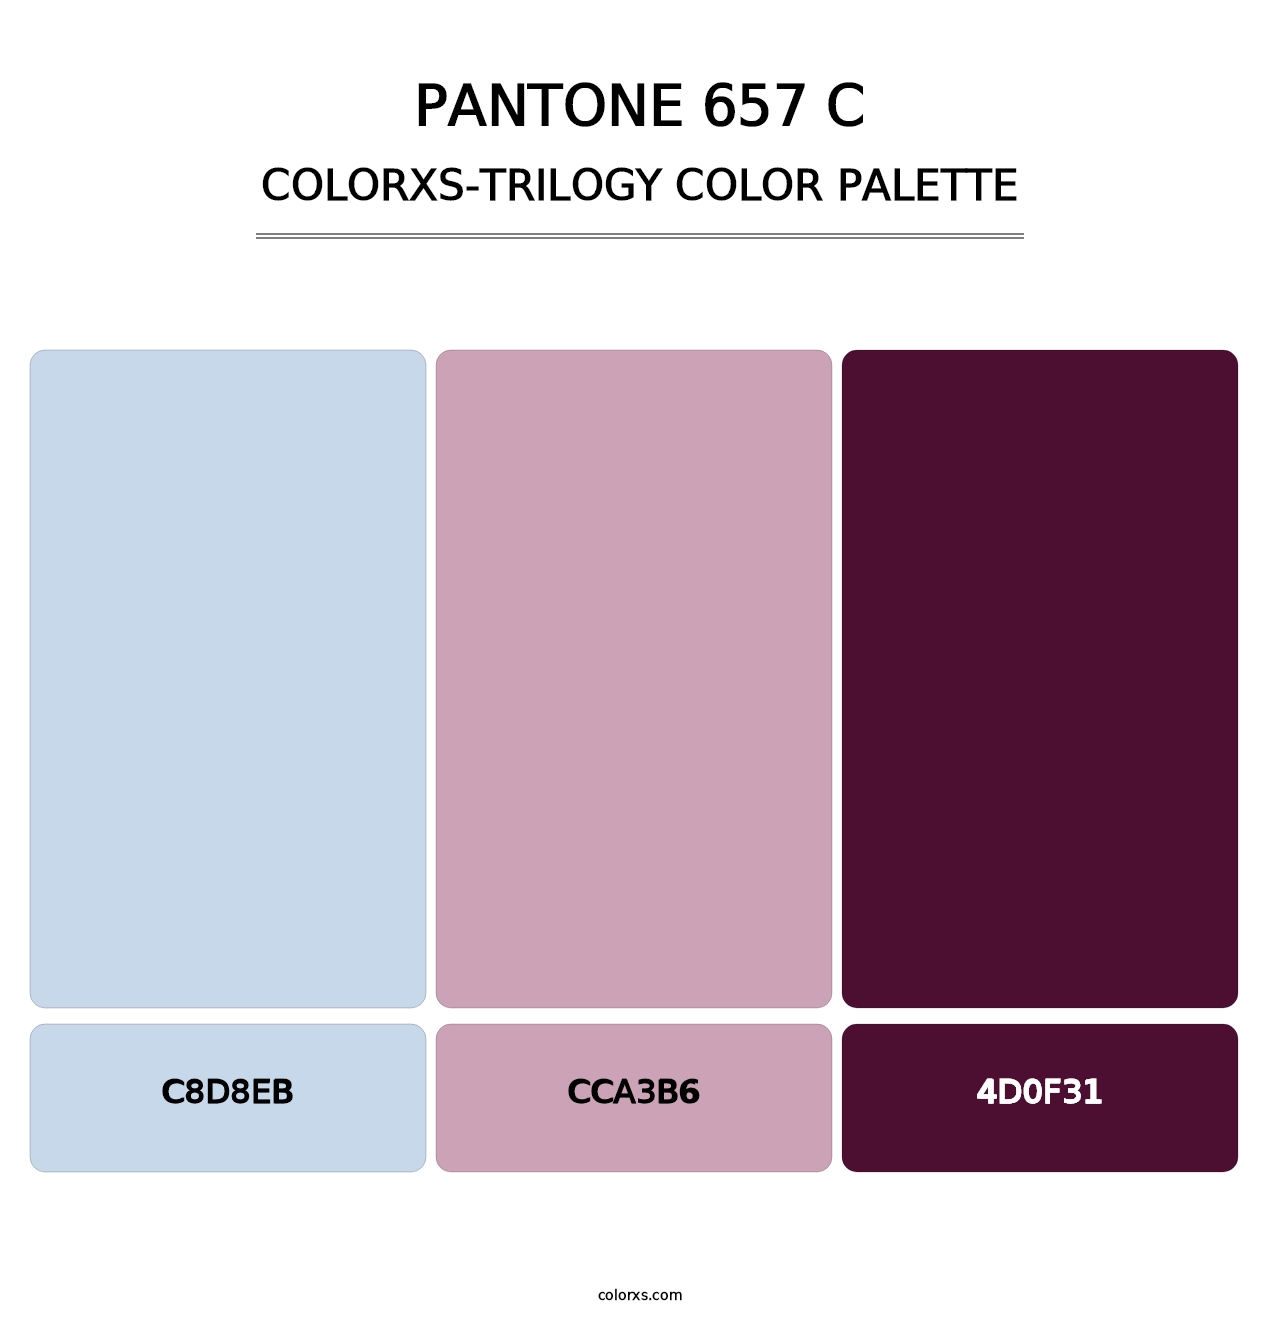 PANTONE 657 C - Colorxs Trilogy Palette